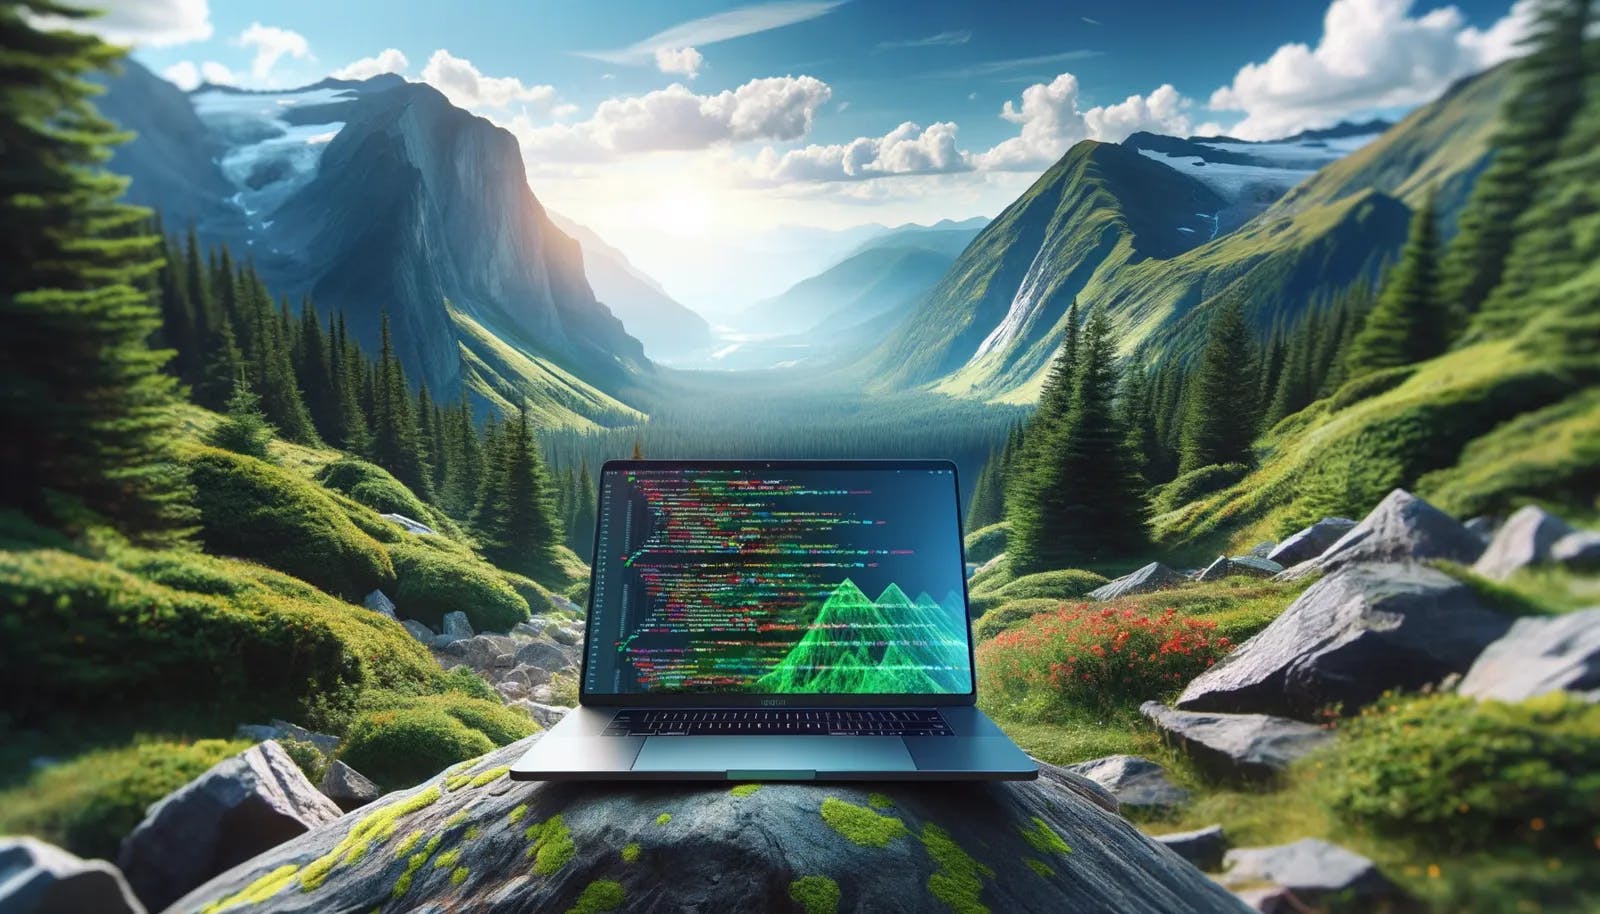 MacBook Pr in a Rocky Mountain landscape